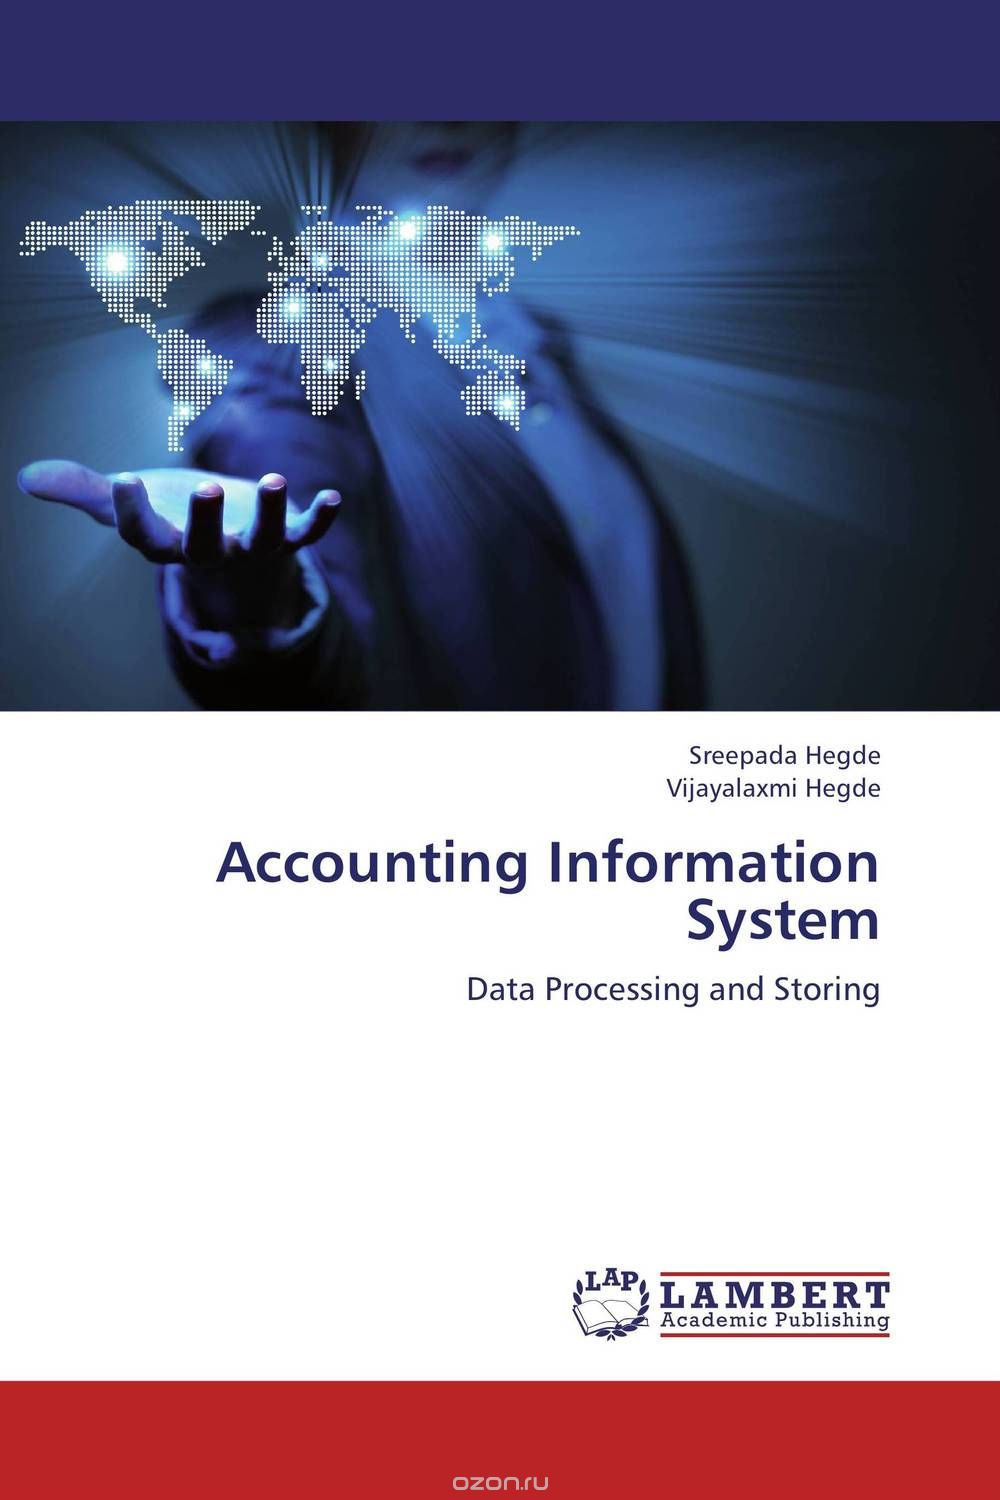 Скачать книгу "Accounting Information System"